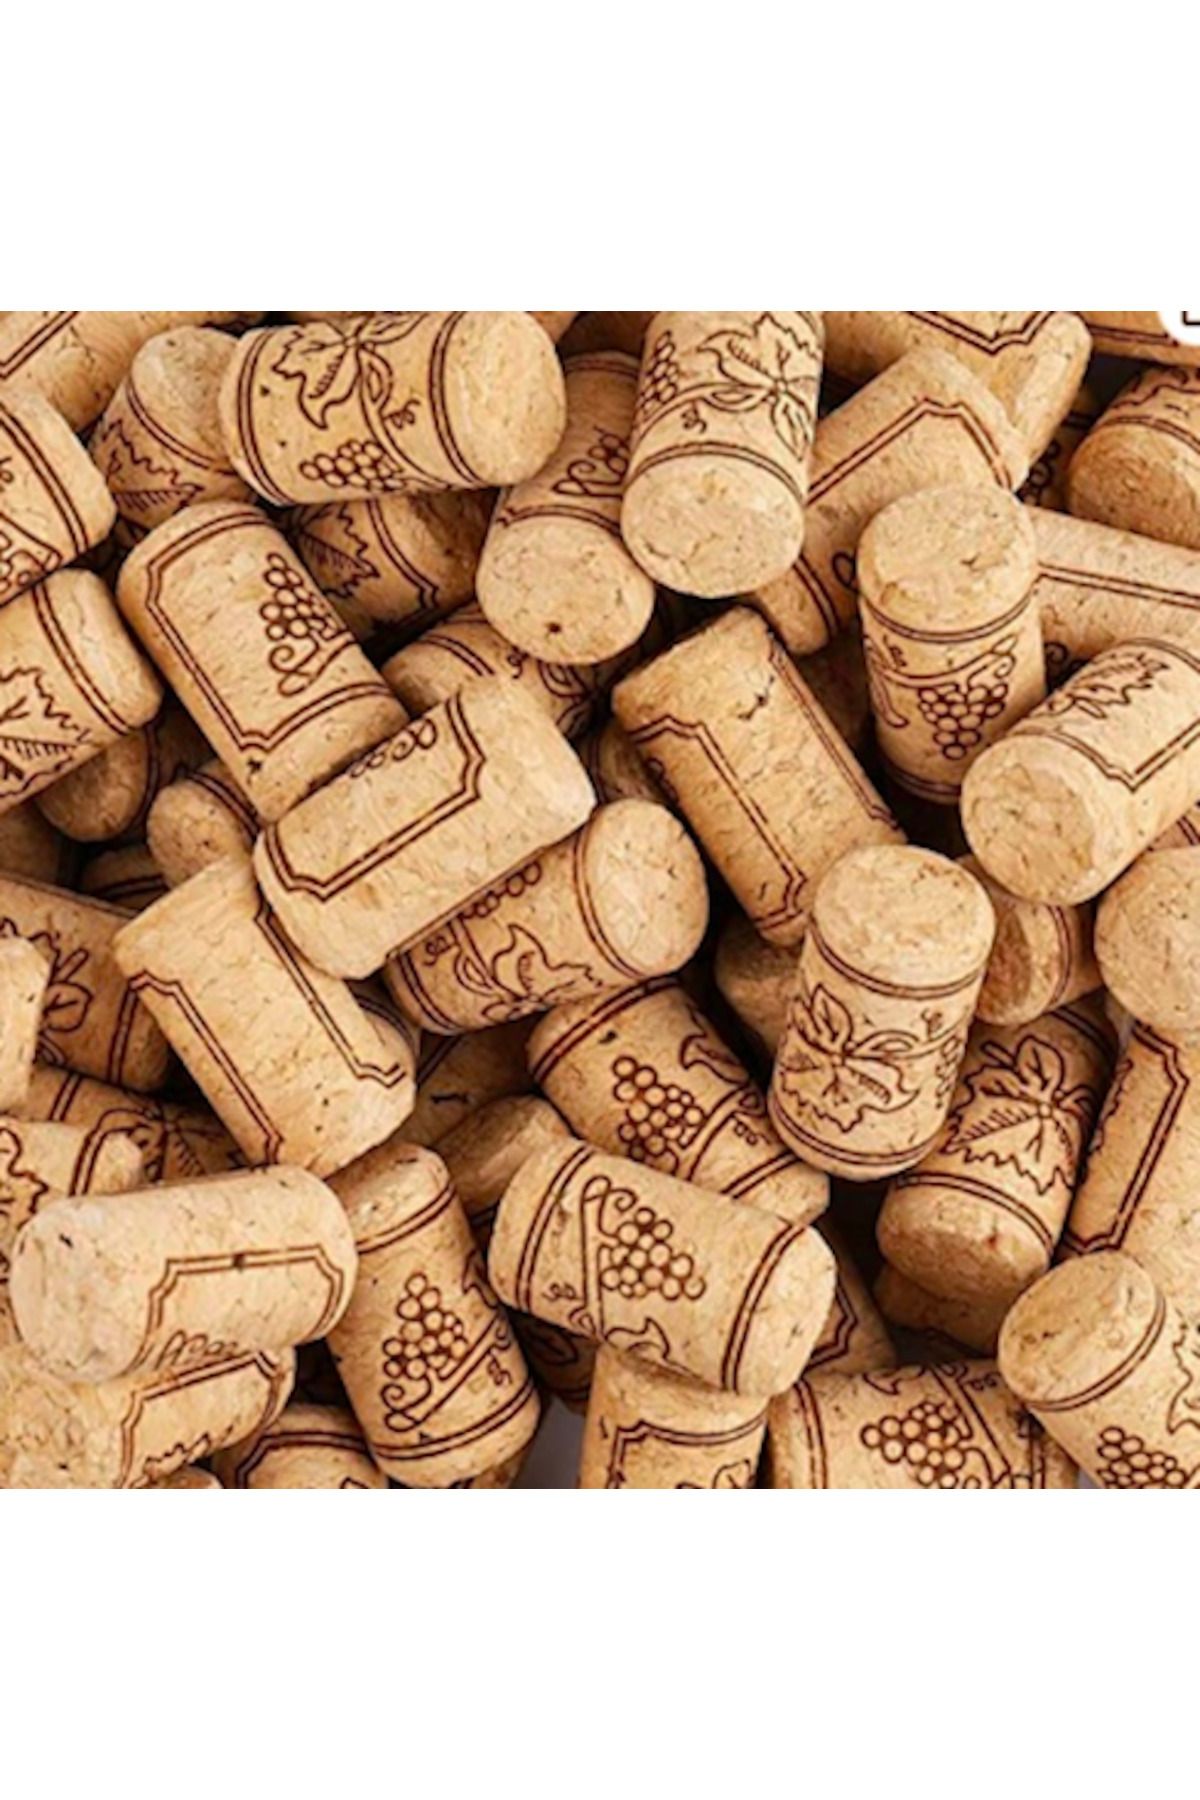 Vinomarket Şarap Şişesi Mantarı  Agglomer - 100 Adet